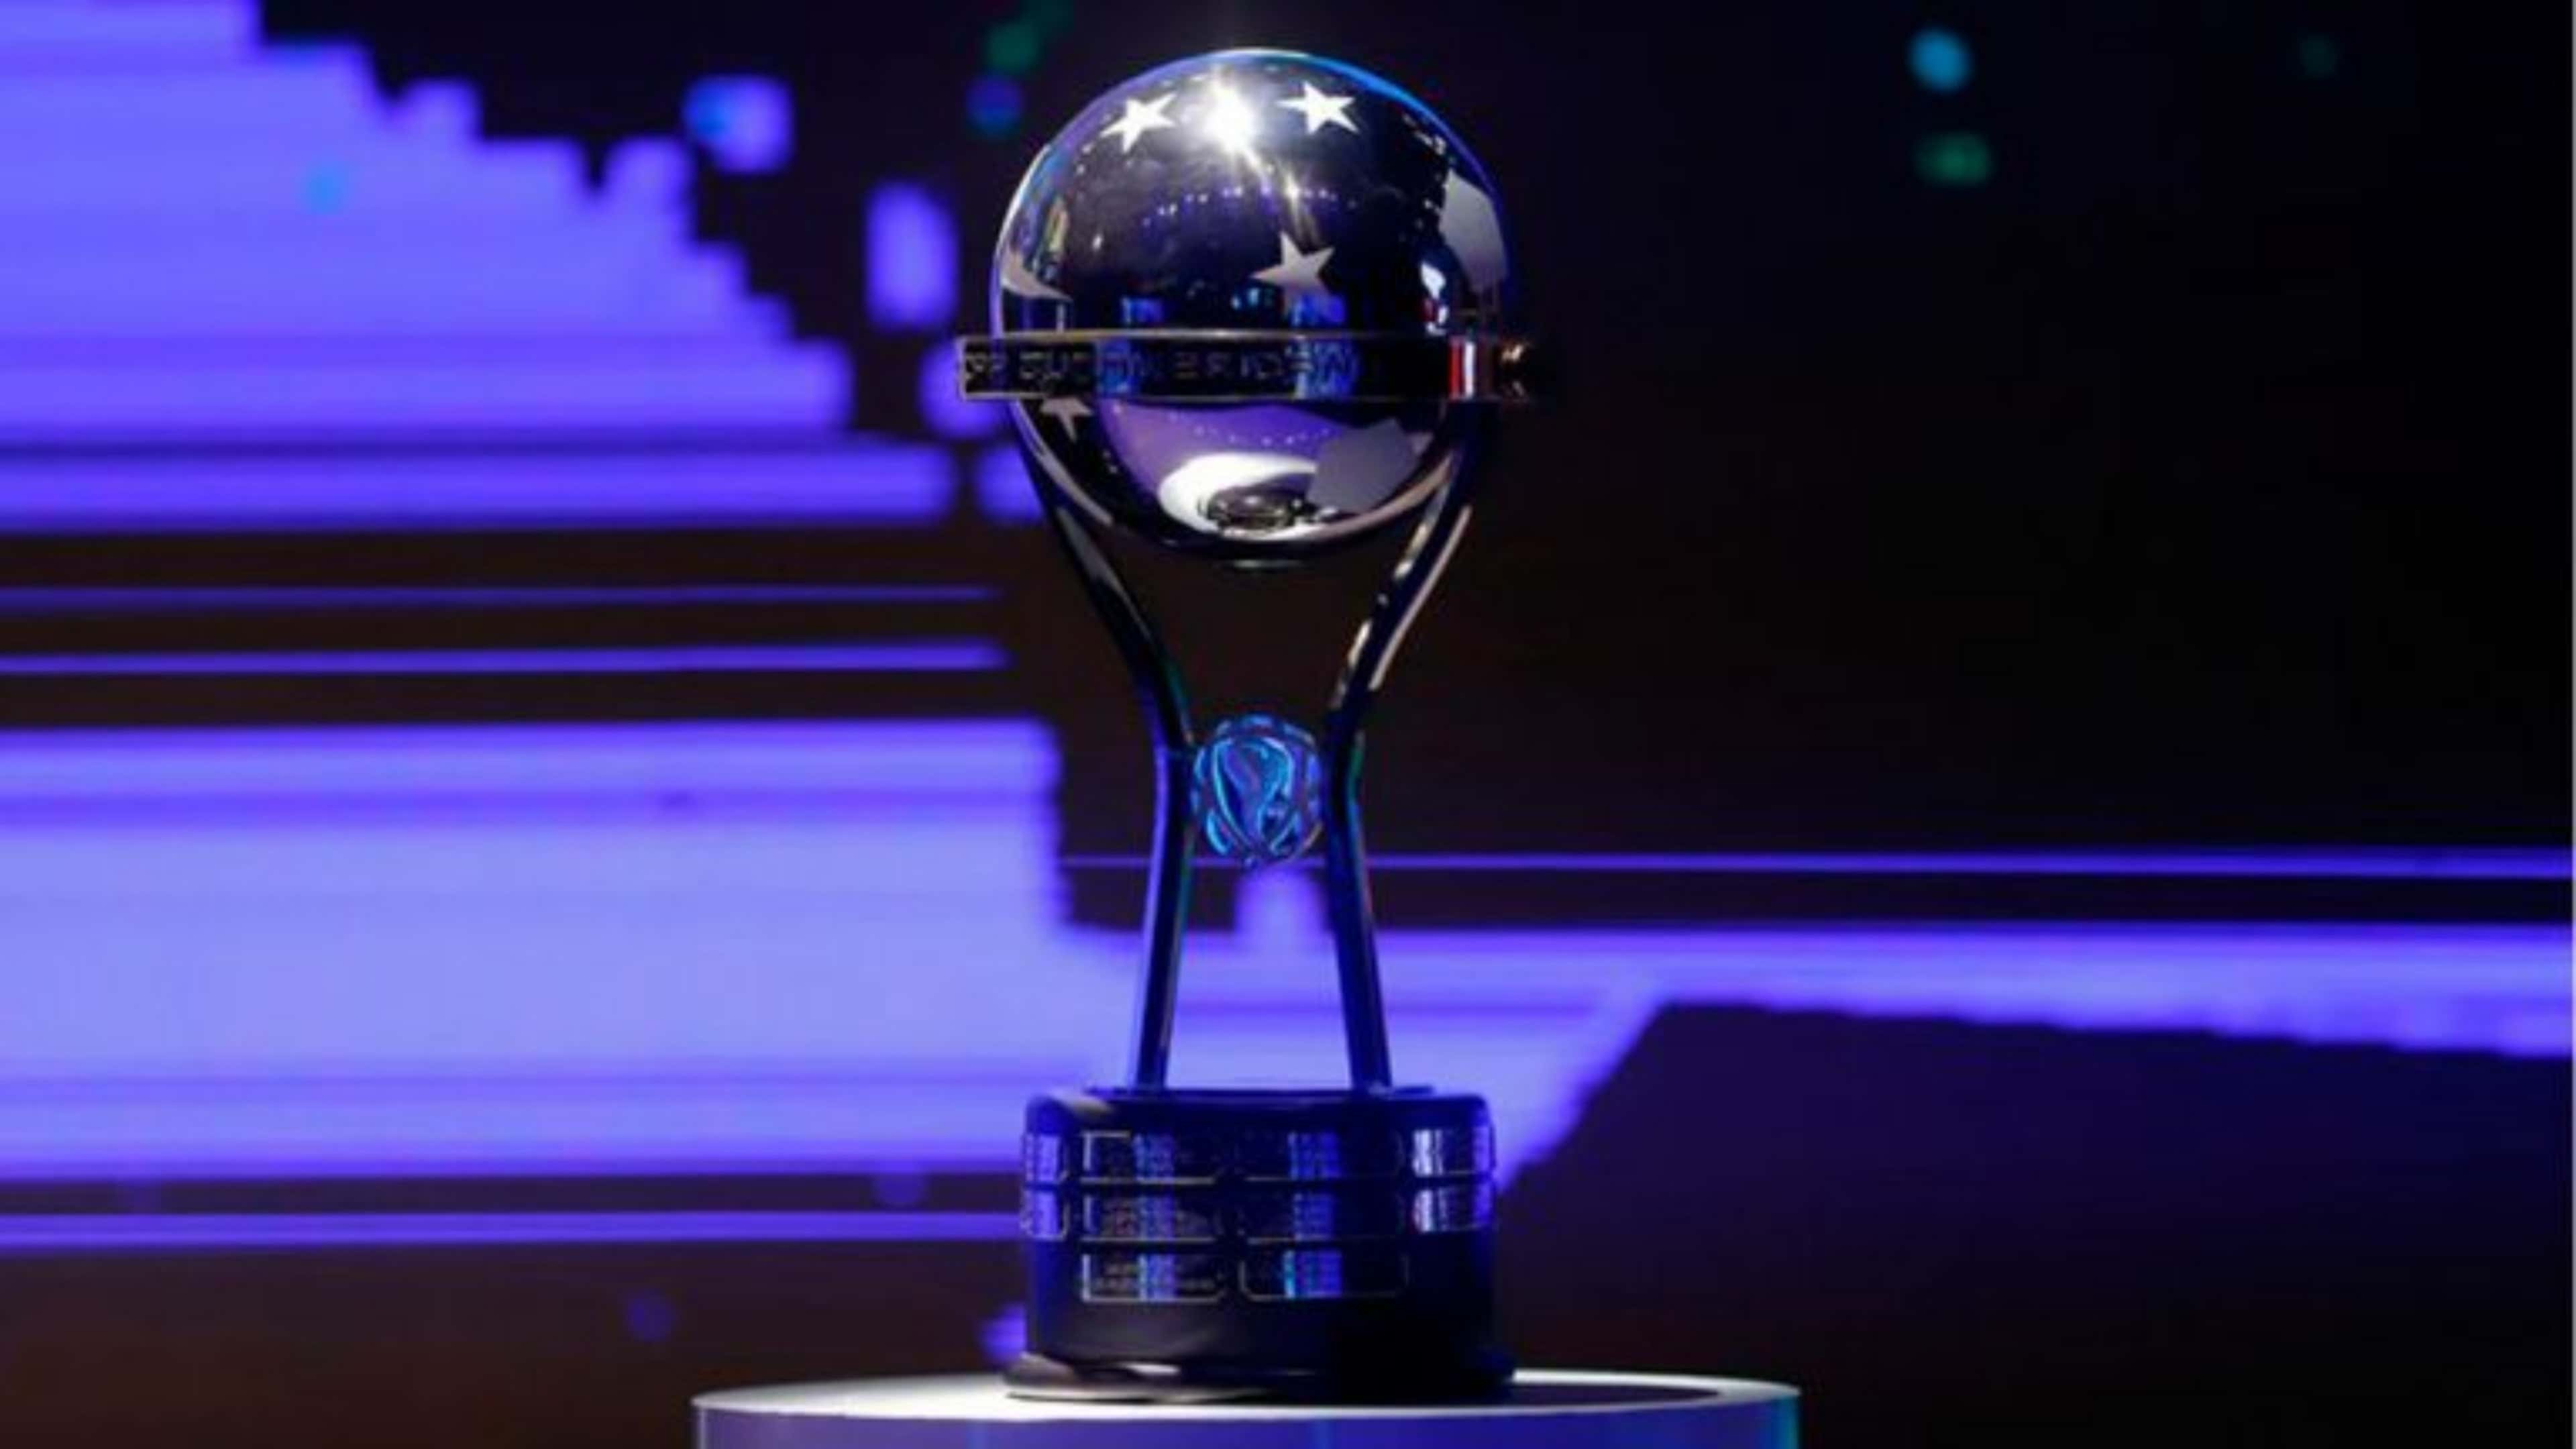 Copa Sul-Americana 2024: lista de times classificados para o torneio